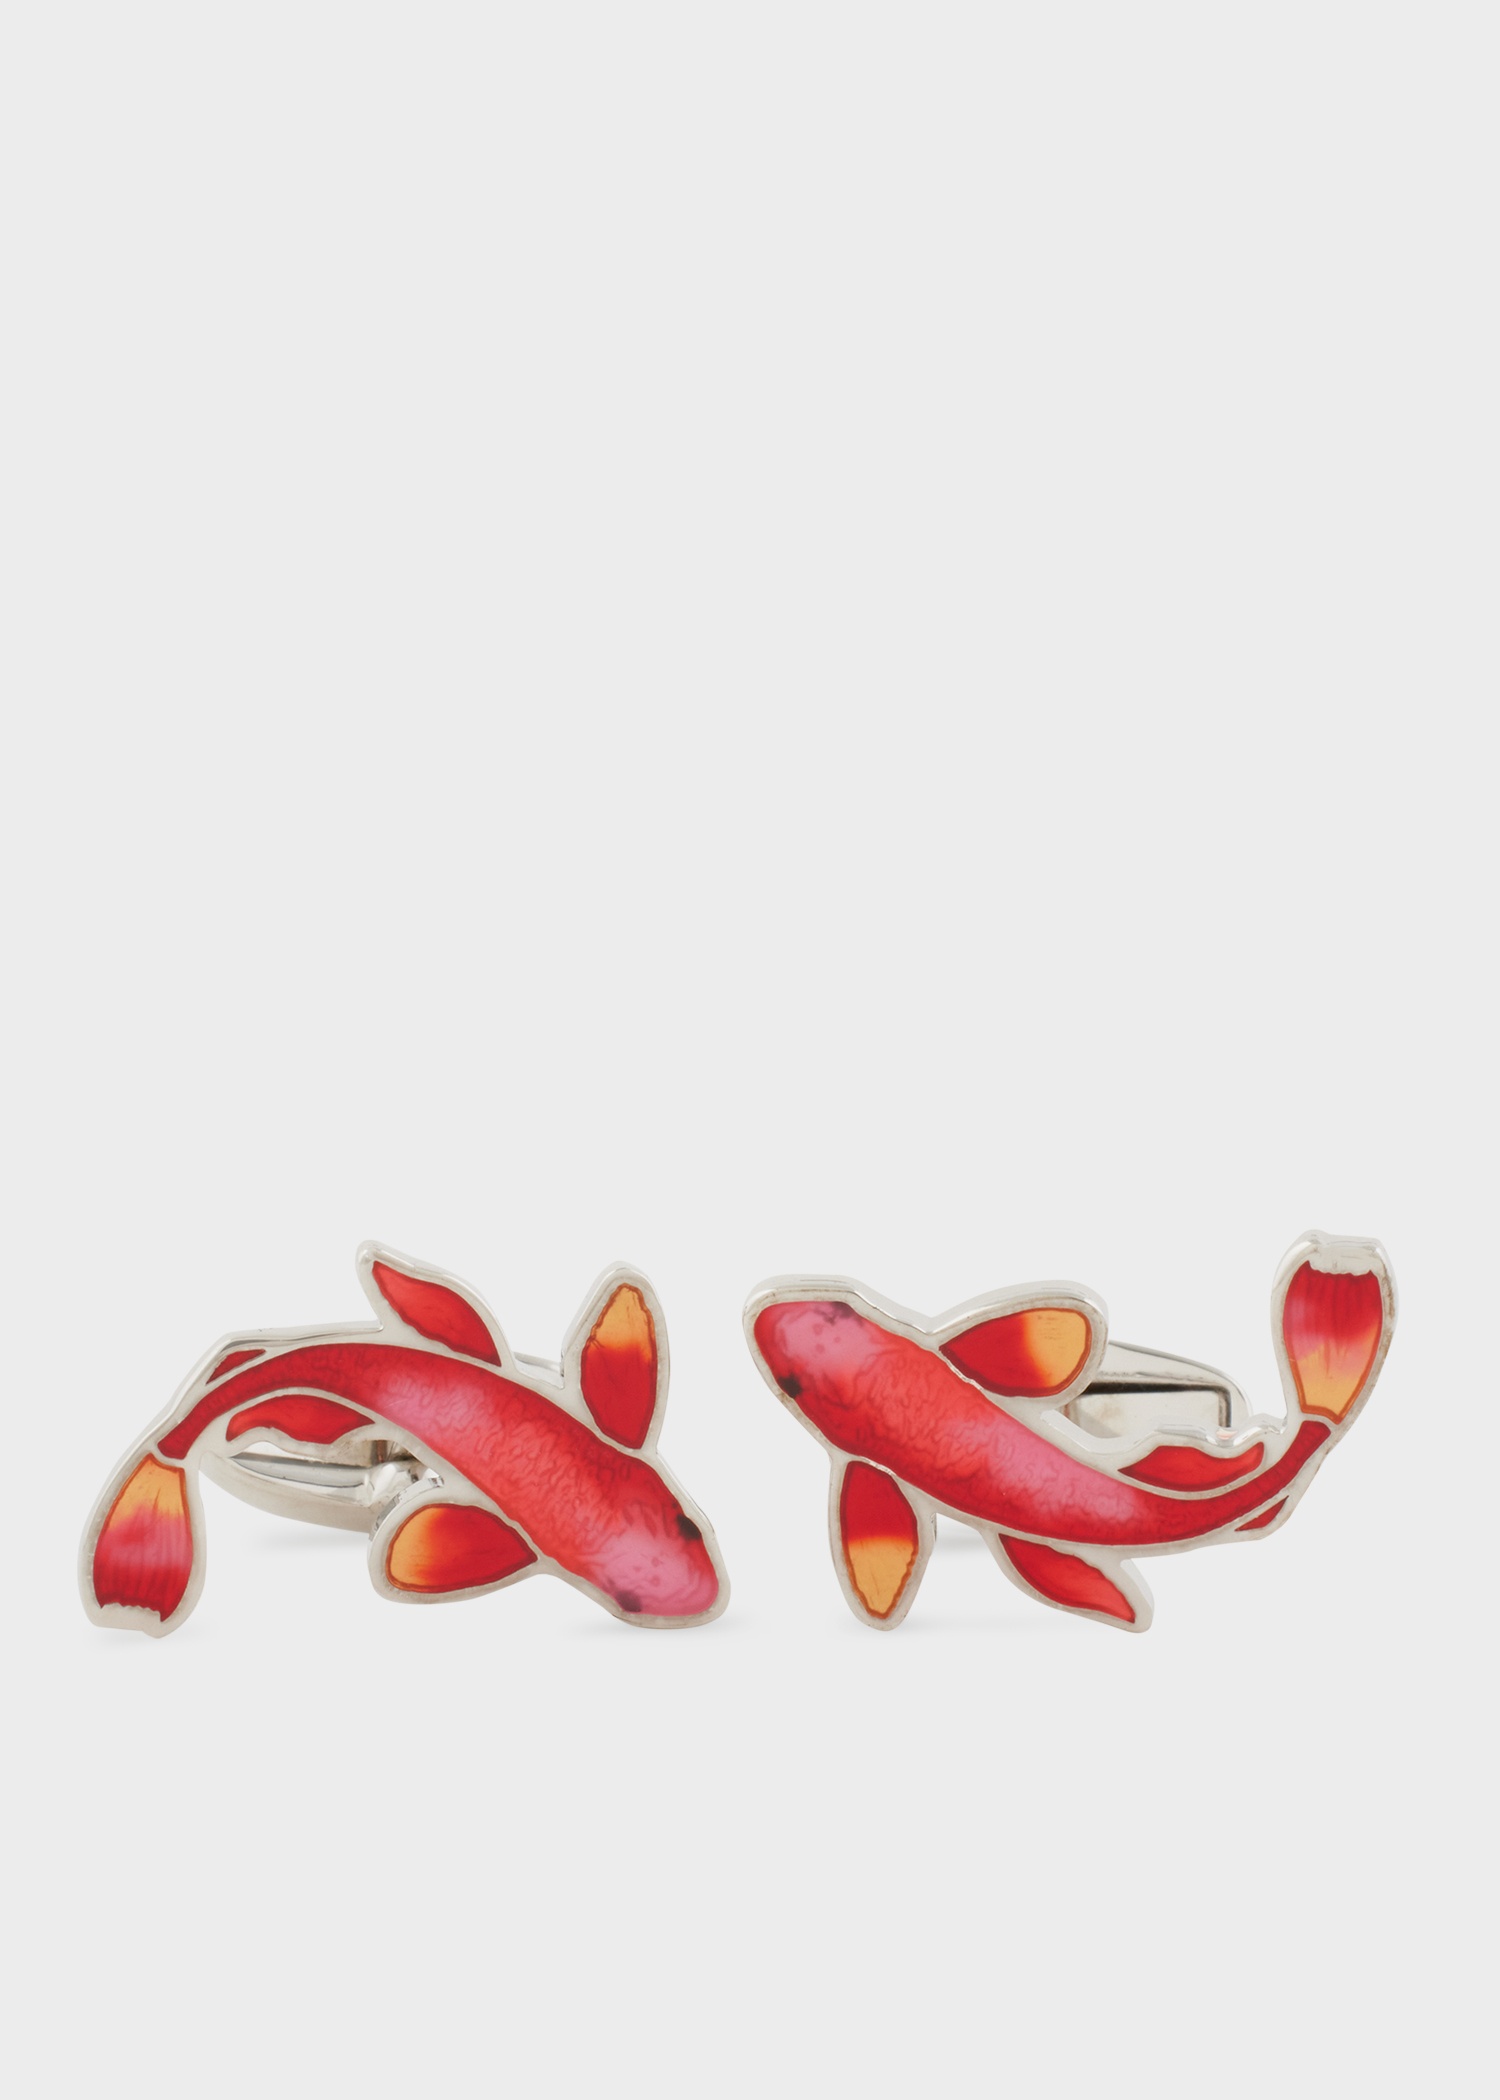 Red Koi Carp Cufflinks - 1